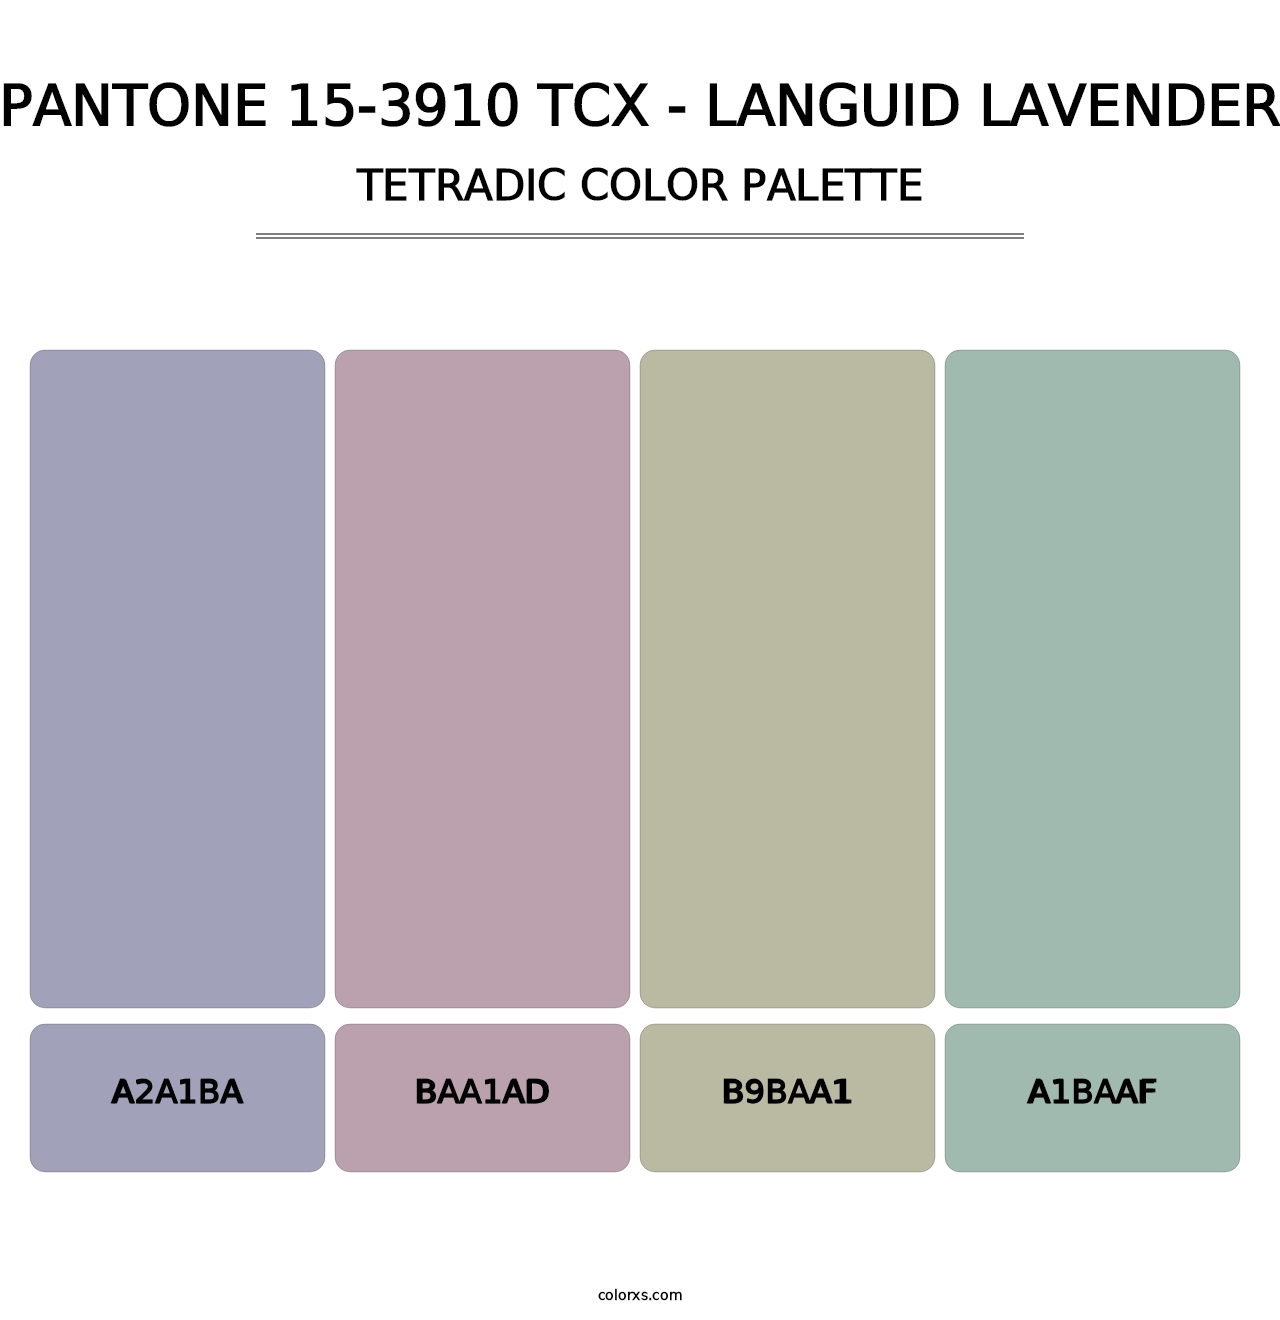 PANTONE 15-3910 TCX - Languid Lavender - Tetradic Color Palette